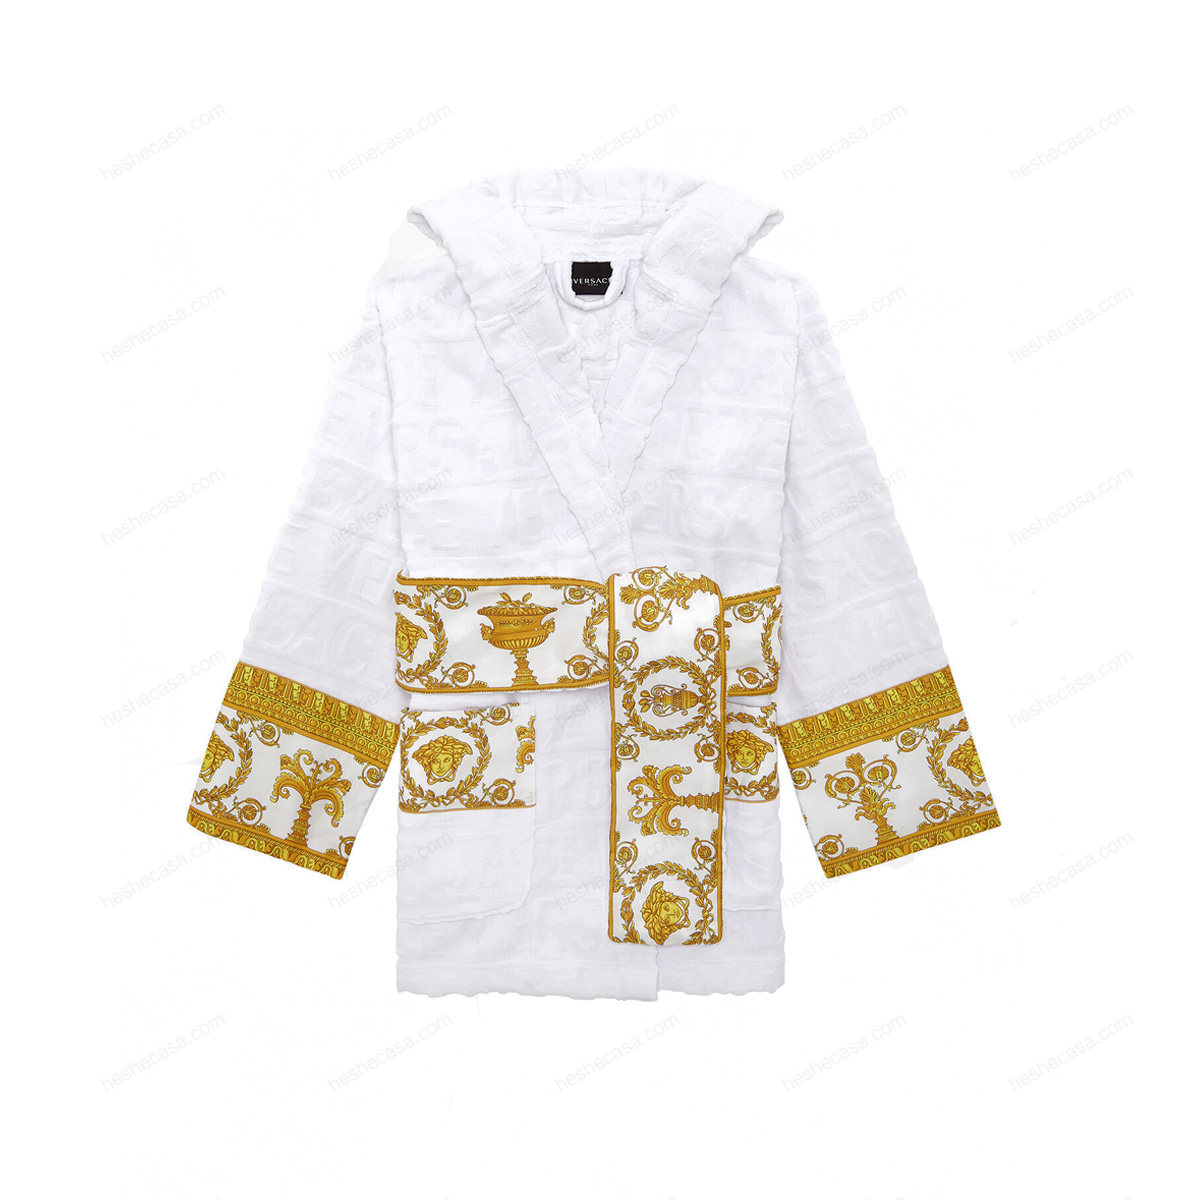 I ♡ Baroque Hooded 浴袍